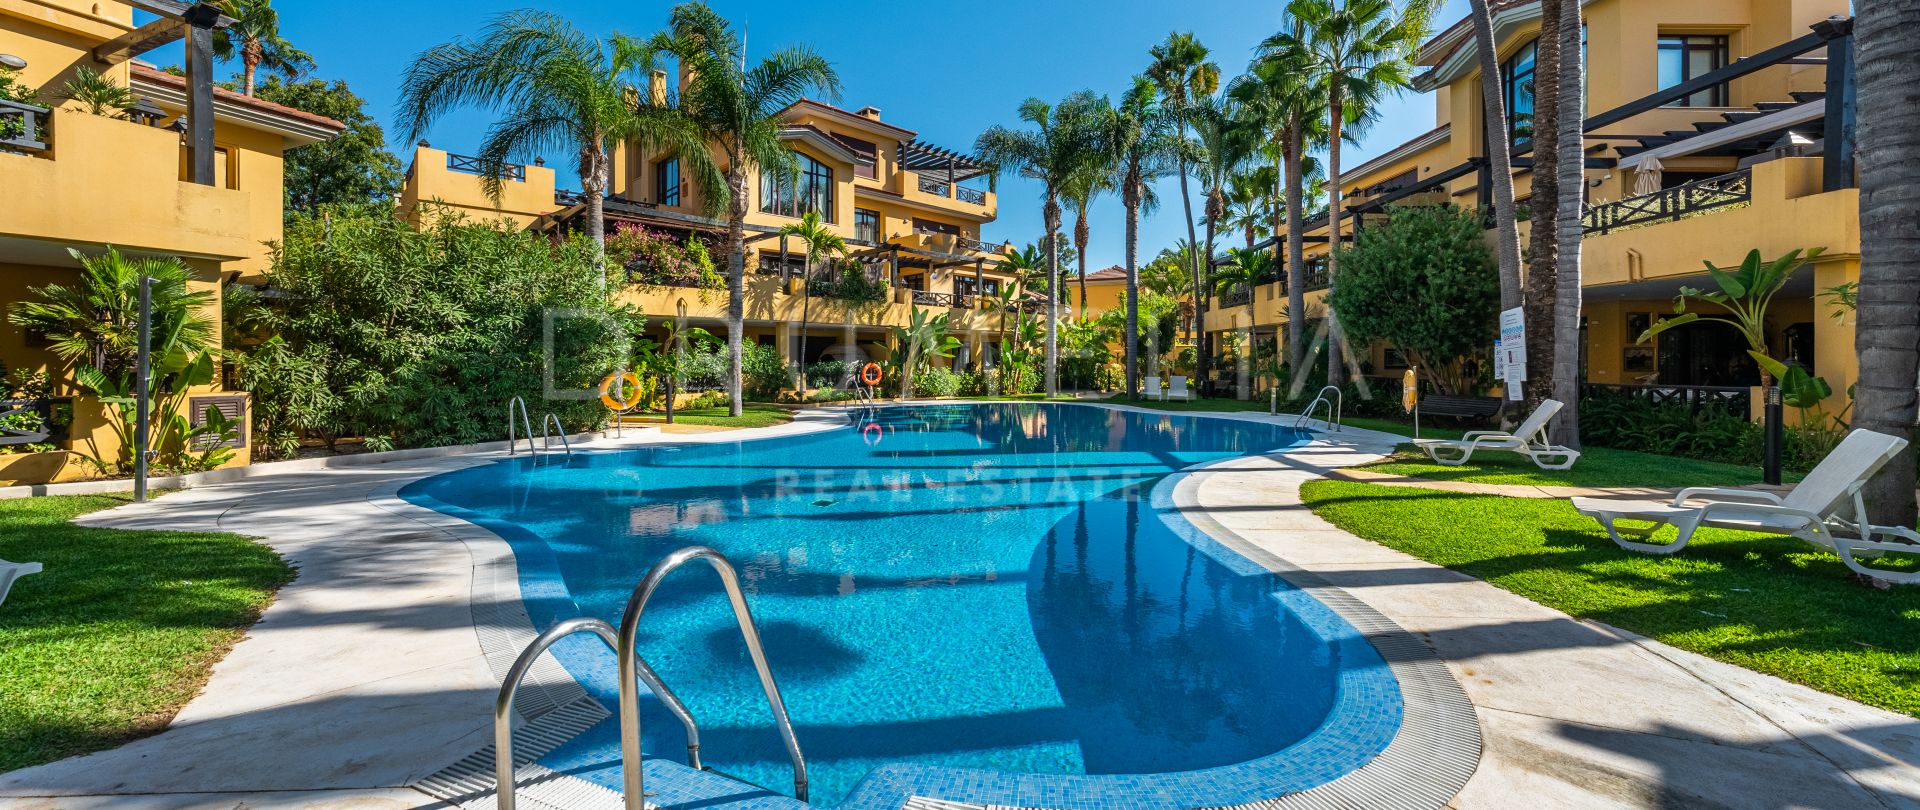 Bel appartement de luxe à vendre à Bahia de Banus, Puerto Banus, Marbella, sur la plage.